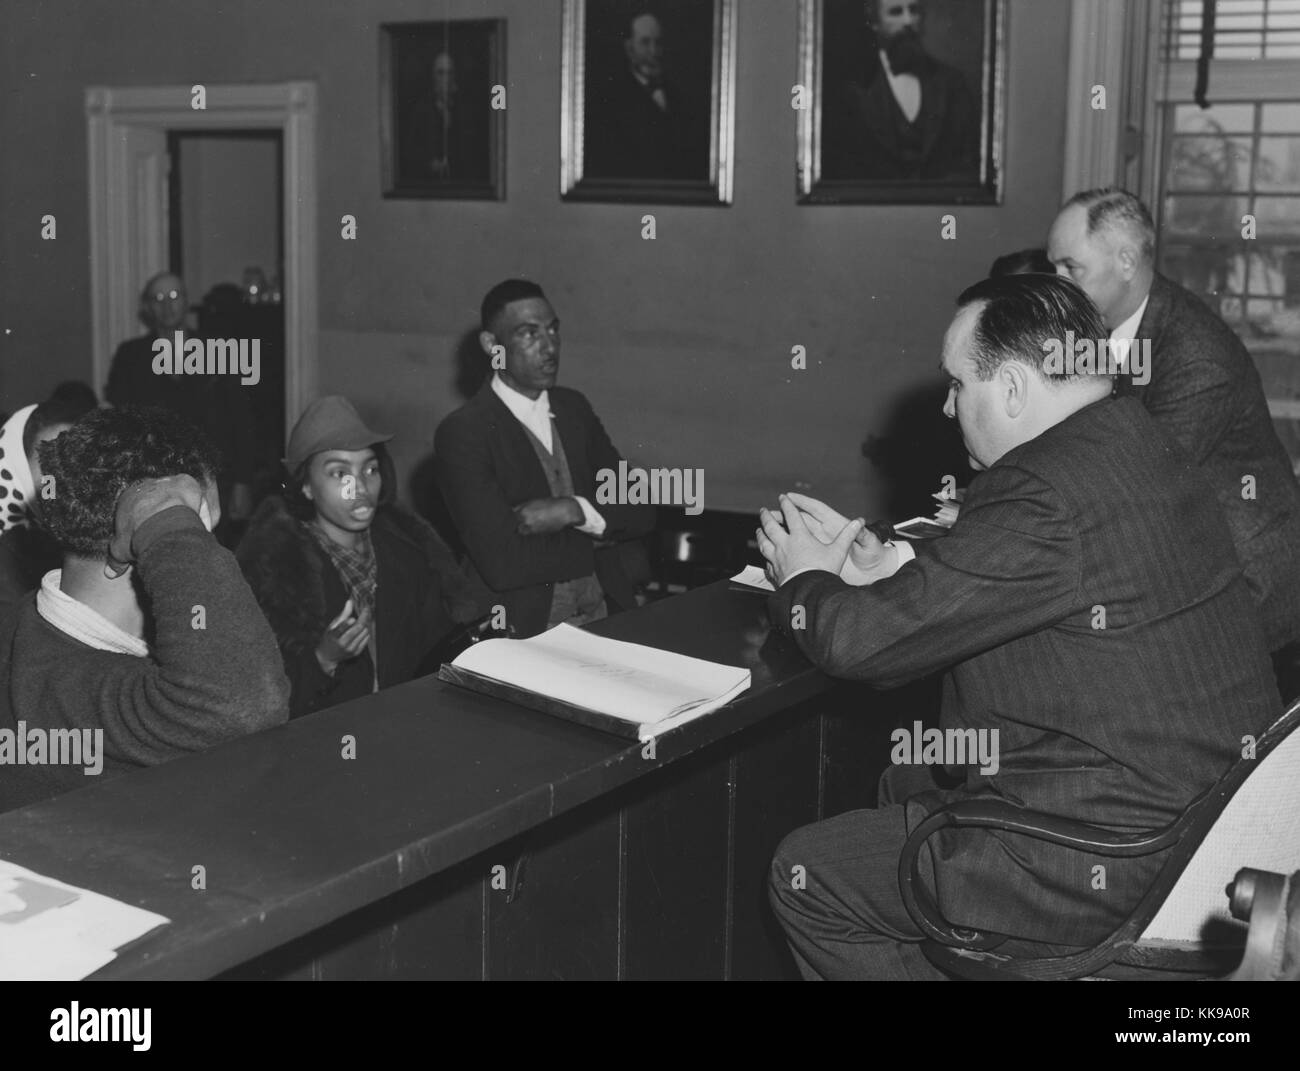 Ein Foto von einer Gruppe von afrikanischen amerikanischen Bürger erscheinen vor zwei weiße Hofbeamten, jeder in schöne Kleidung ist, die zwei Gruppen von einem hohen hölzernen Barriere und die Beamten sind auf einer erhöhten Plattform getrennt sind, ein anderer Mann Uhren aus der Tür, der Raum ist mit drei Portraits von verschiedenen Männern, Rustburg, Virginia, März, 1941 eingerichtet. Von der New York Public Library. Stockfoto